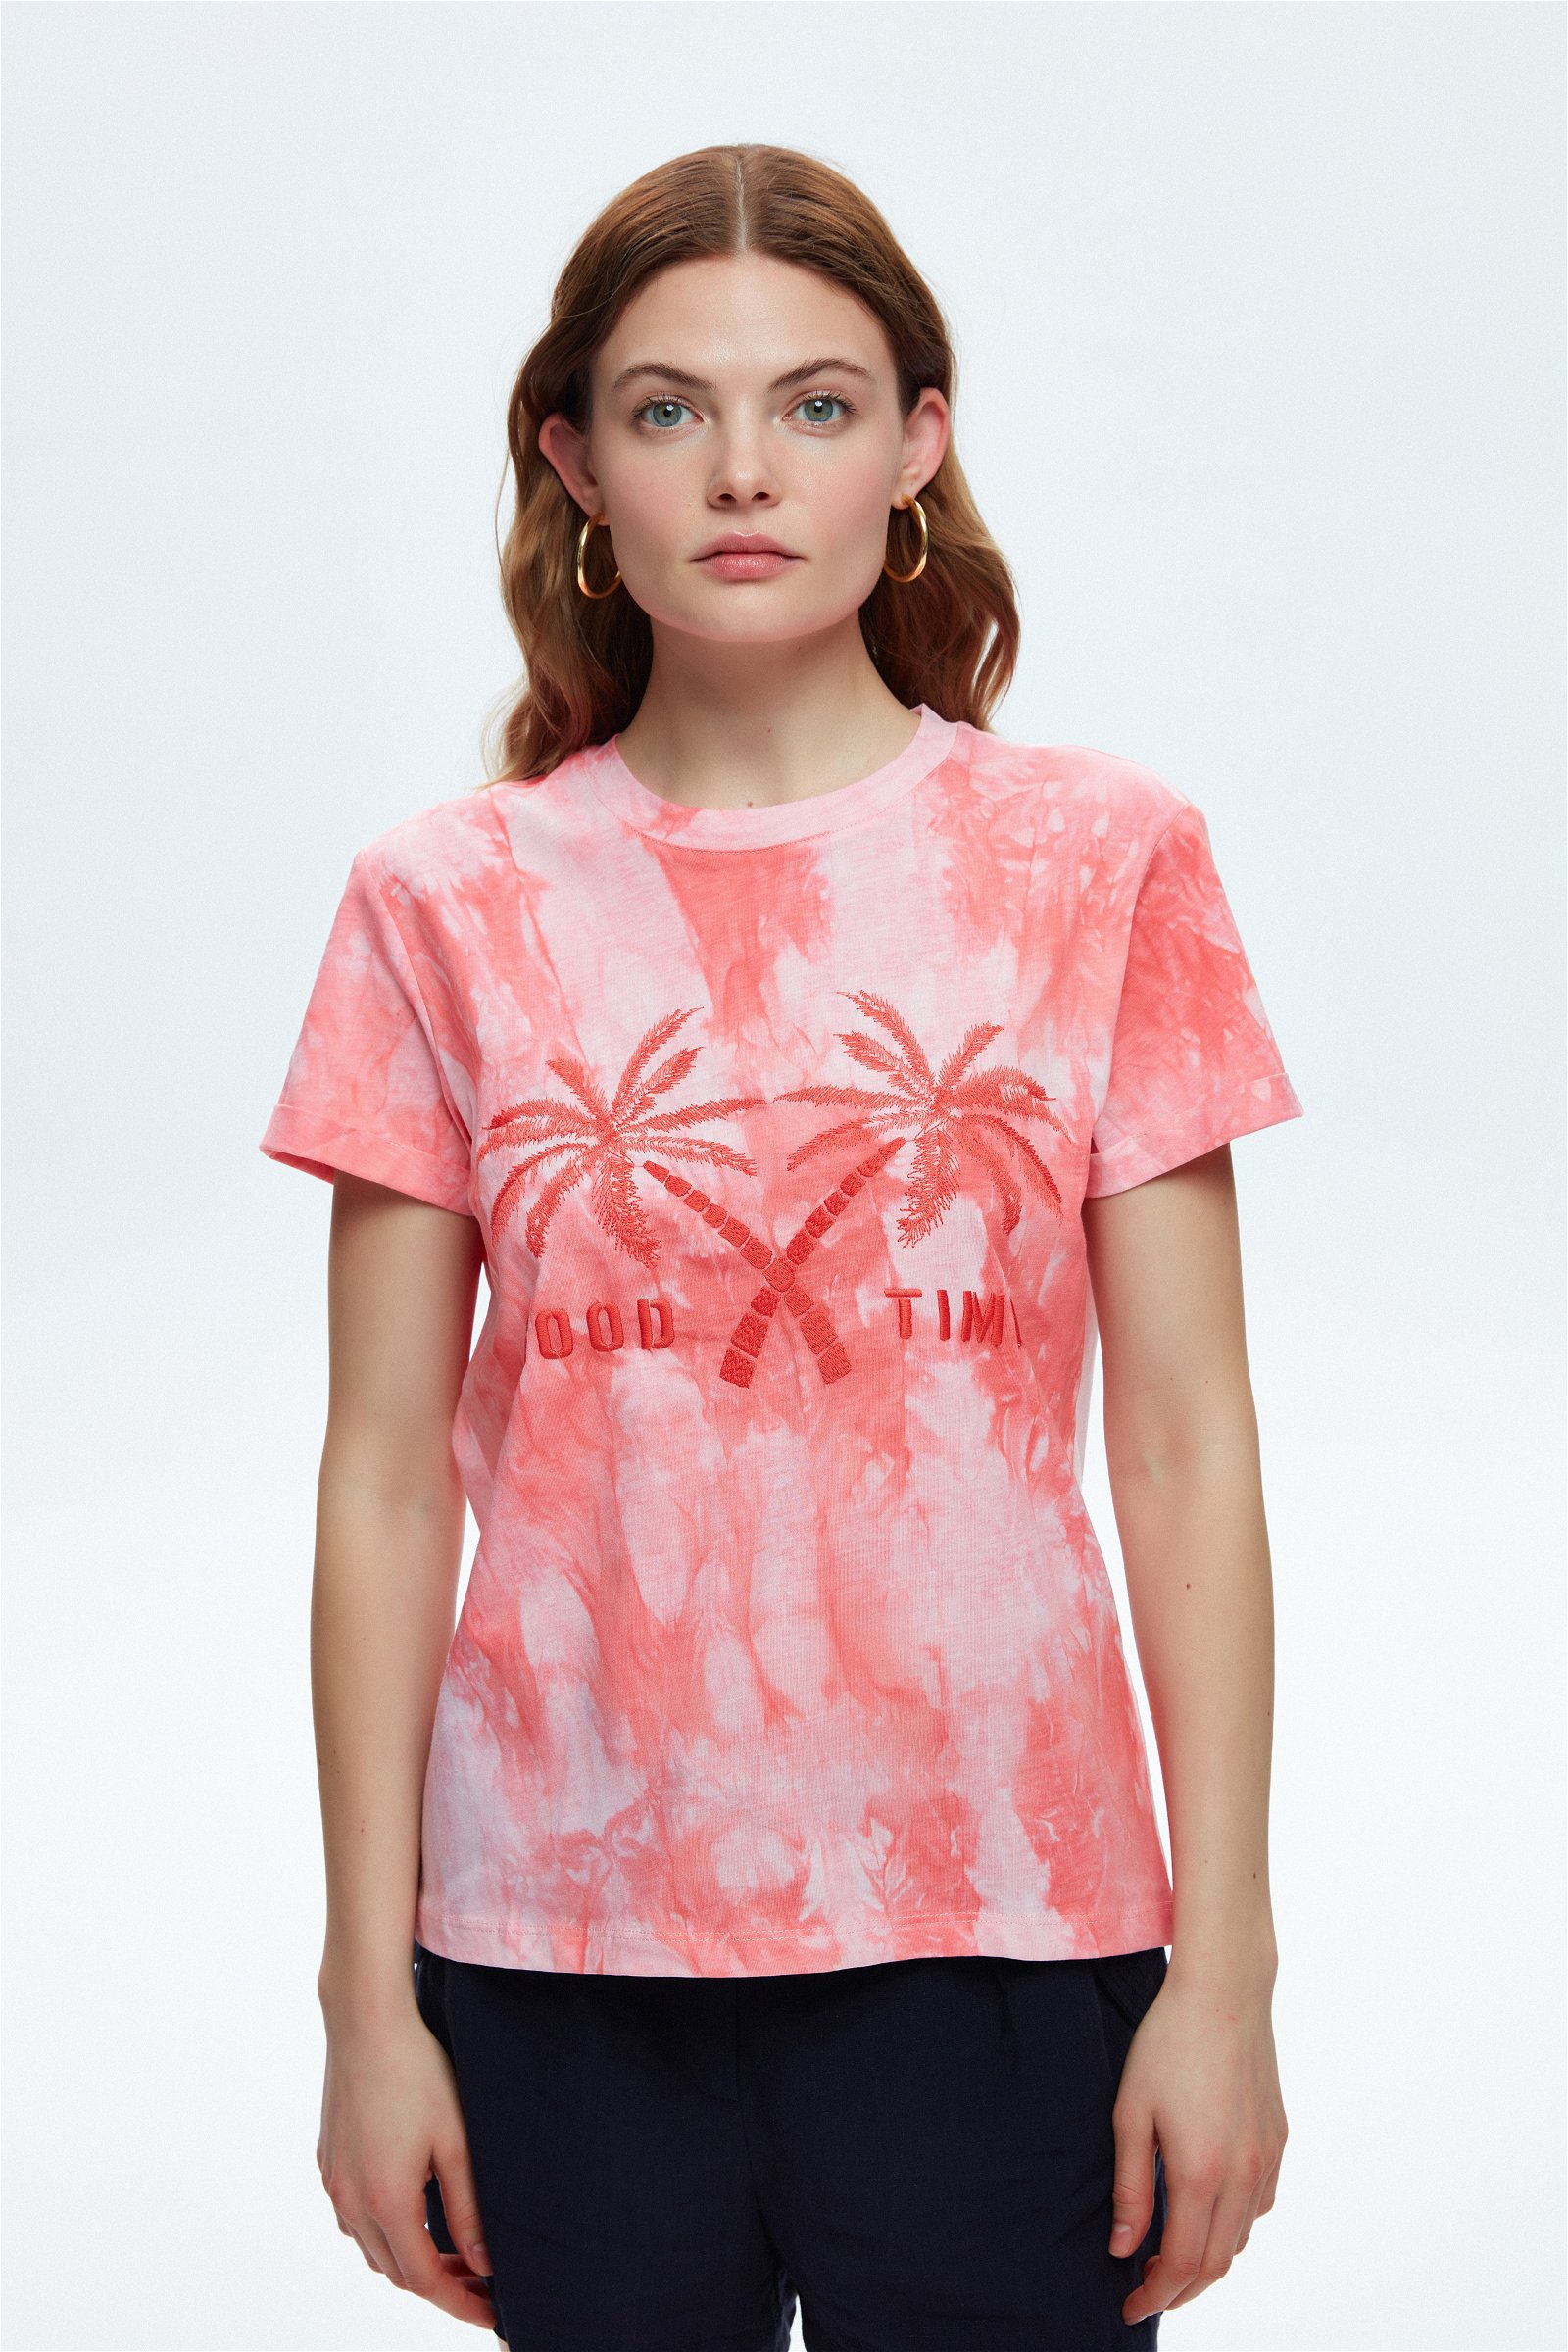 Kadın Tişört, Baskılı & Crop Tişört Modelleri | adL | T-Shirts